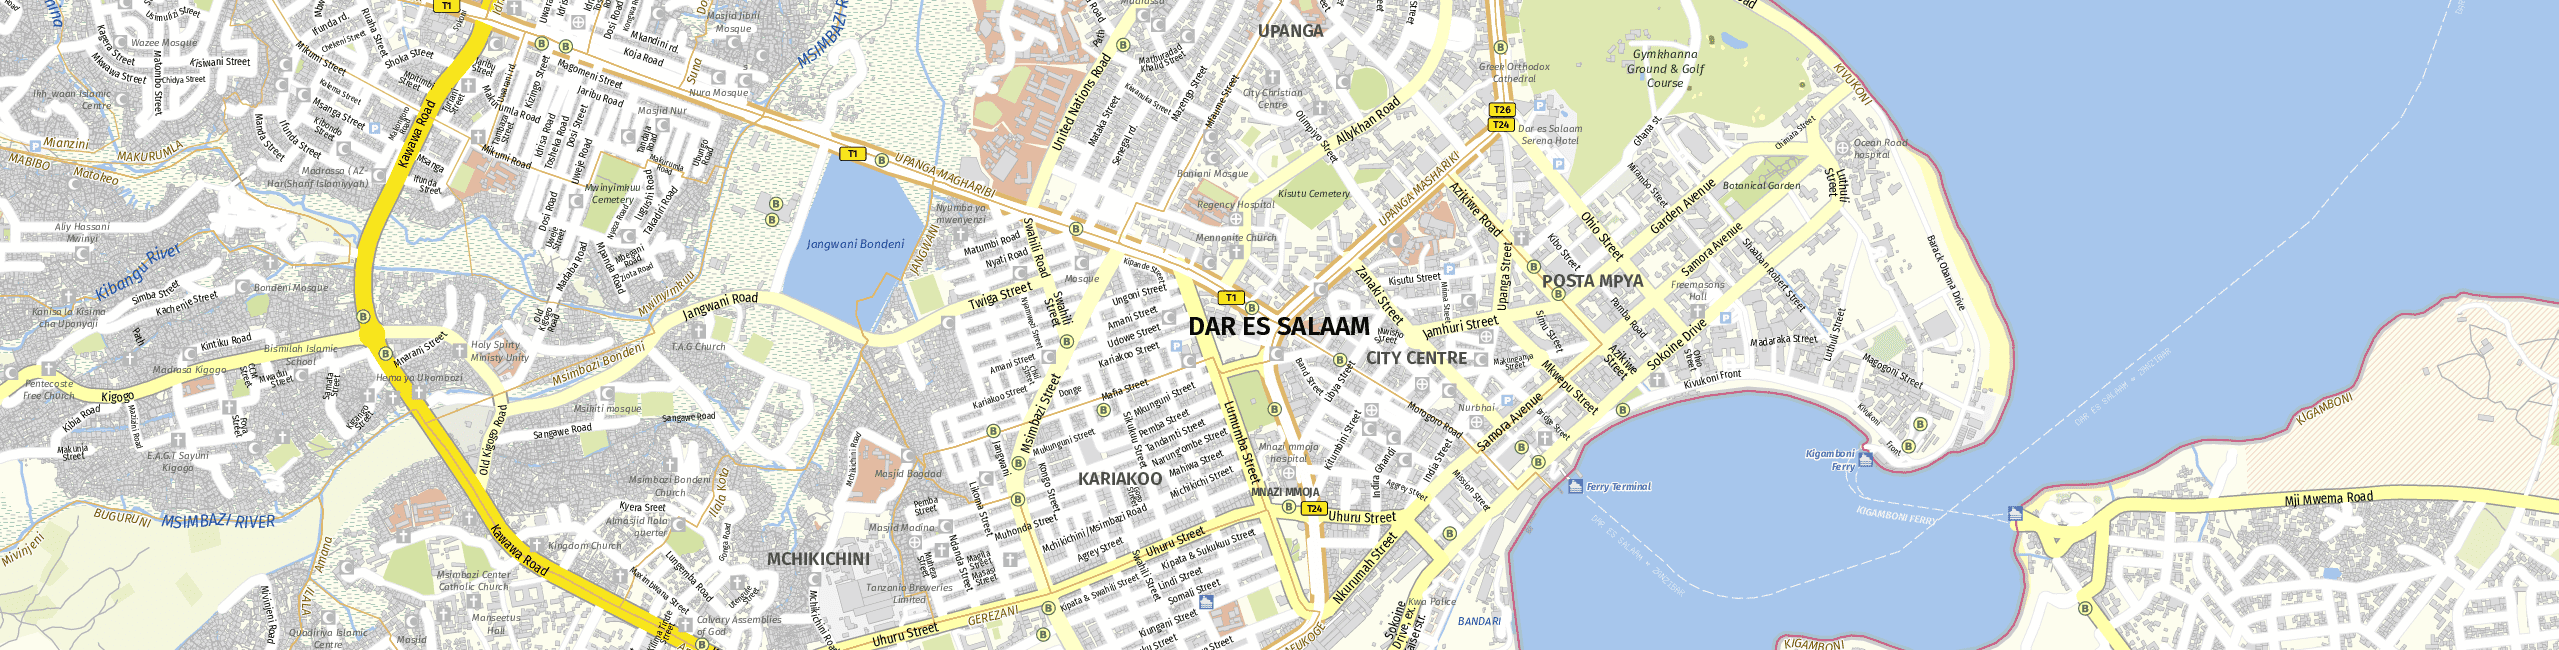 Stadtplan Dar es Salaam zum Downloaden.